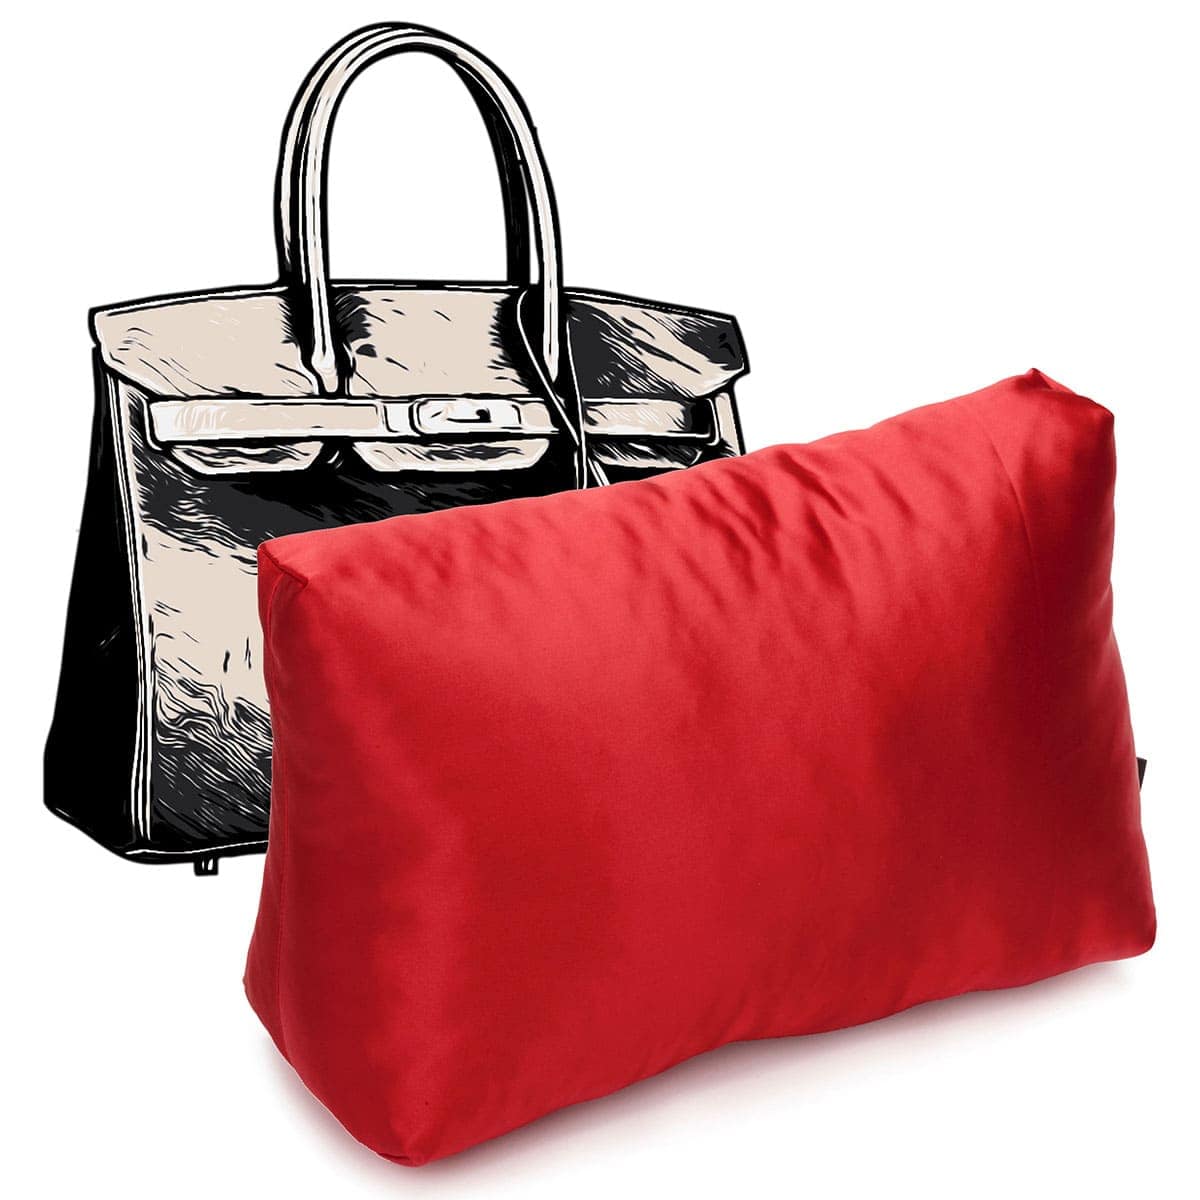 Purse Pillow for Hermes Bolide Bag Models, Bag Shaper Pillow